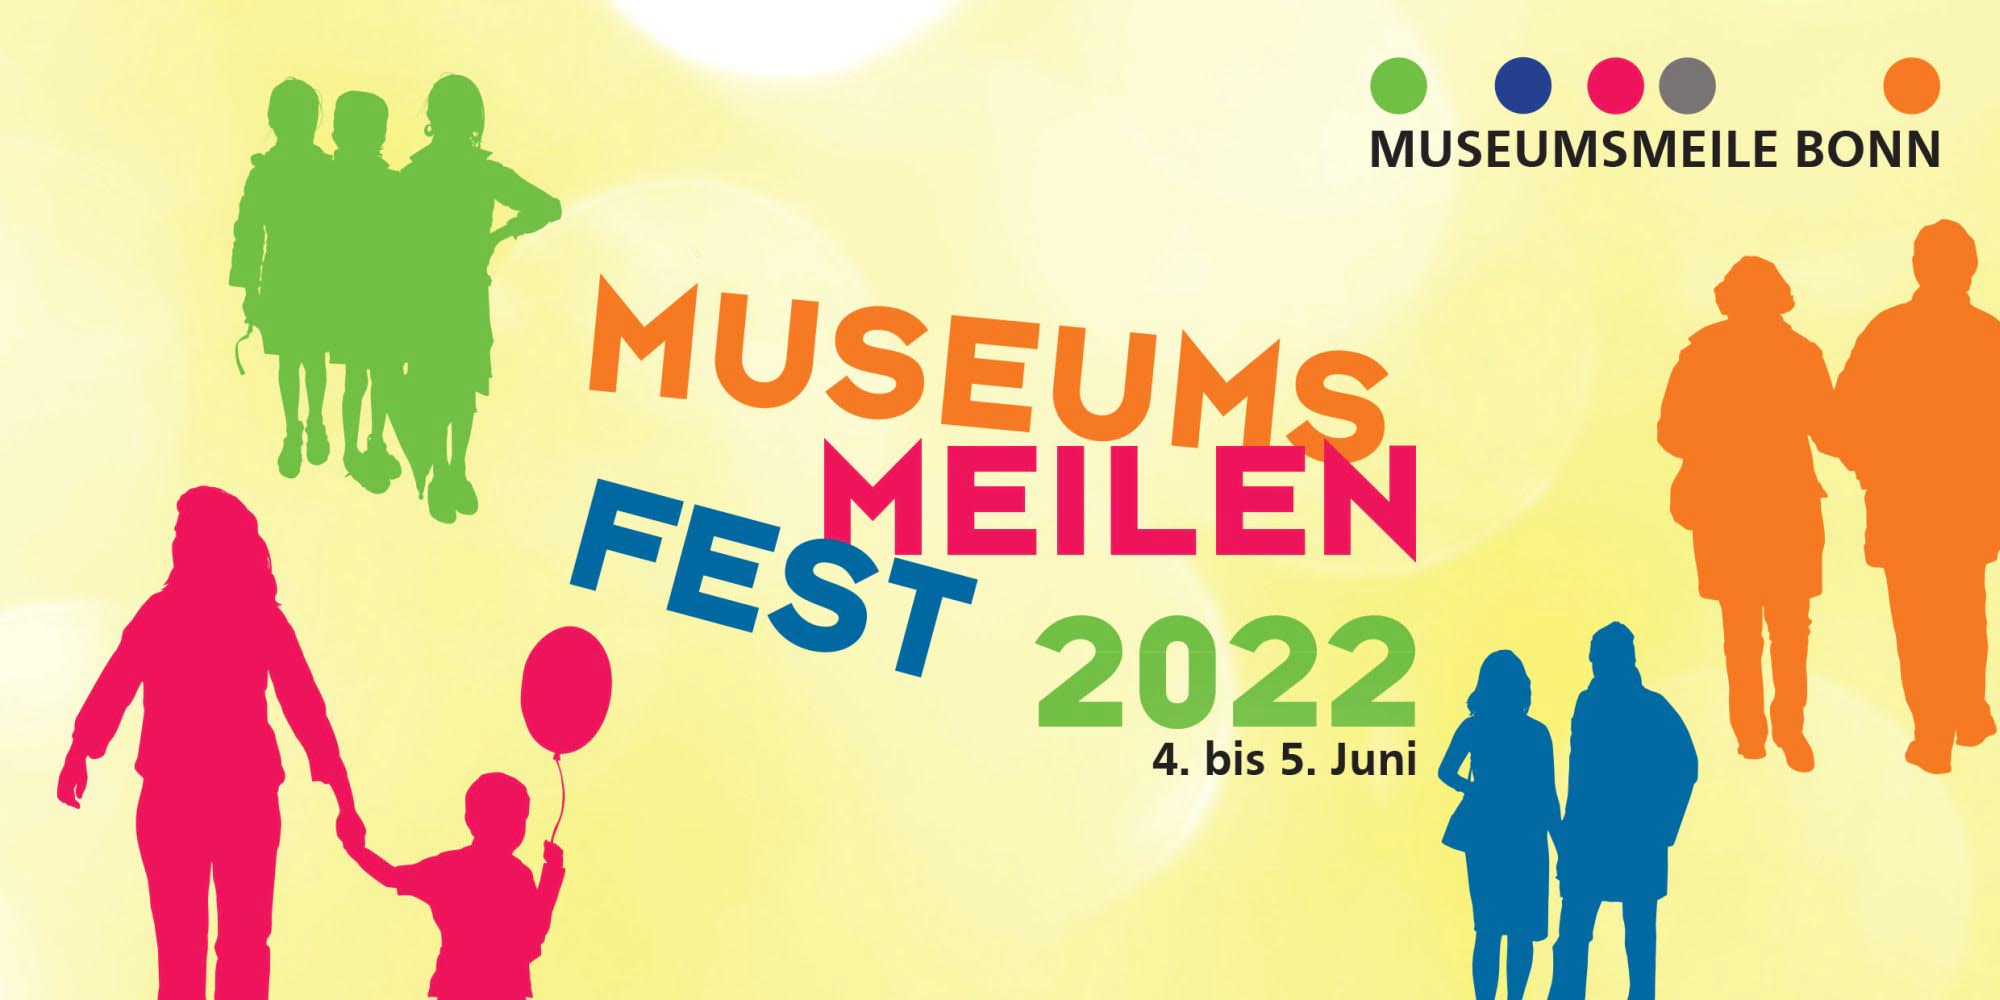 Mehrfarbiges Bild mit dem Datum des Museumsmeilenfestes und schematischen Zeichnungen von Menschen verschiedener Altersstufen.